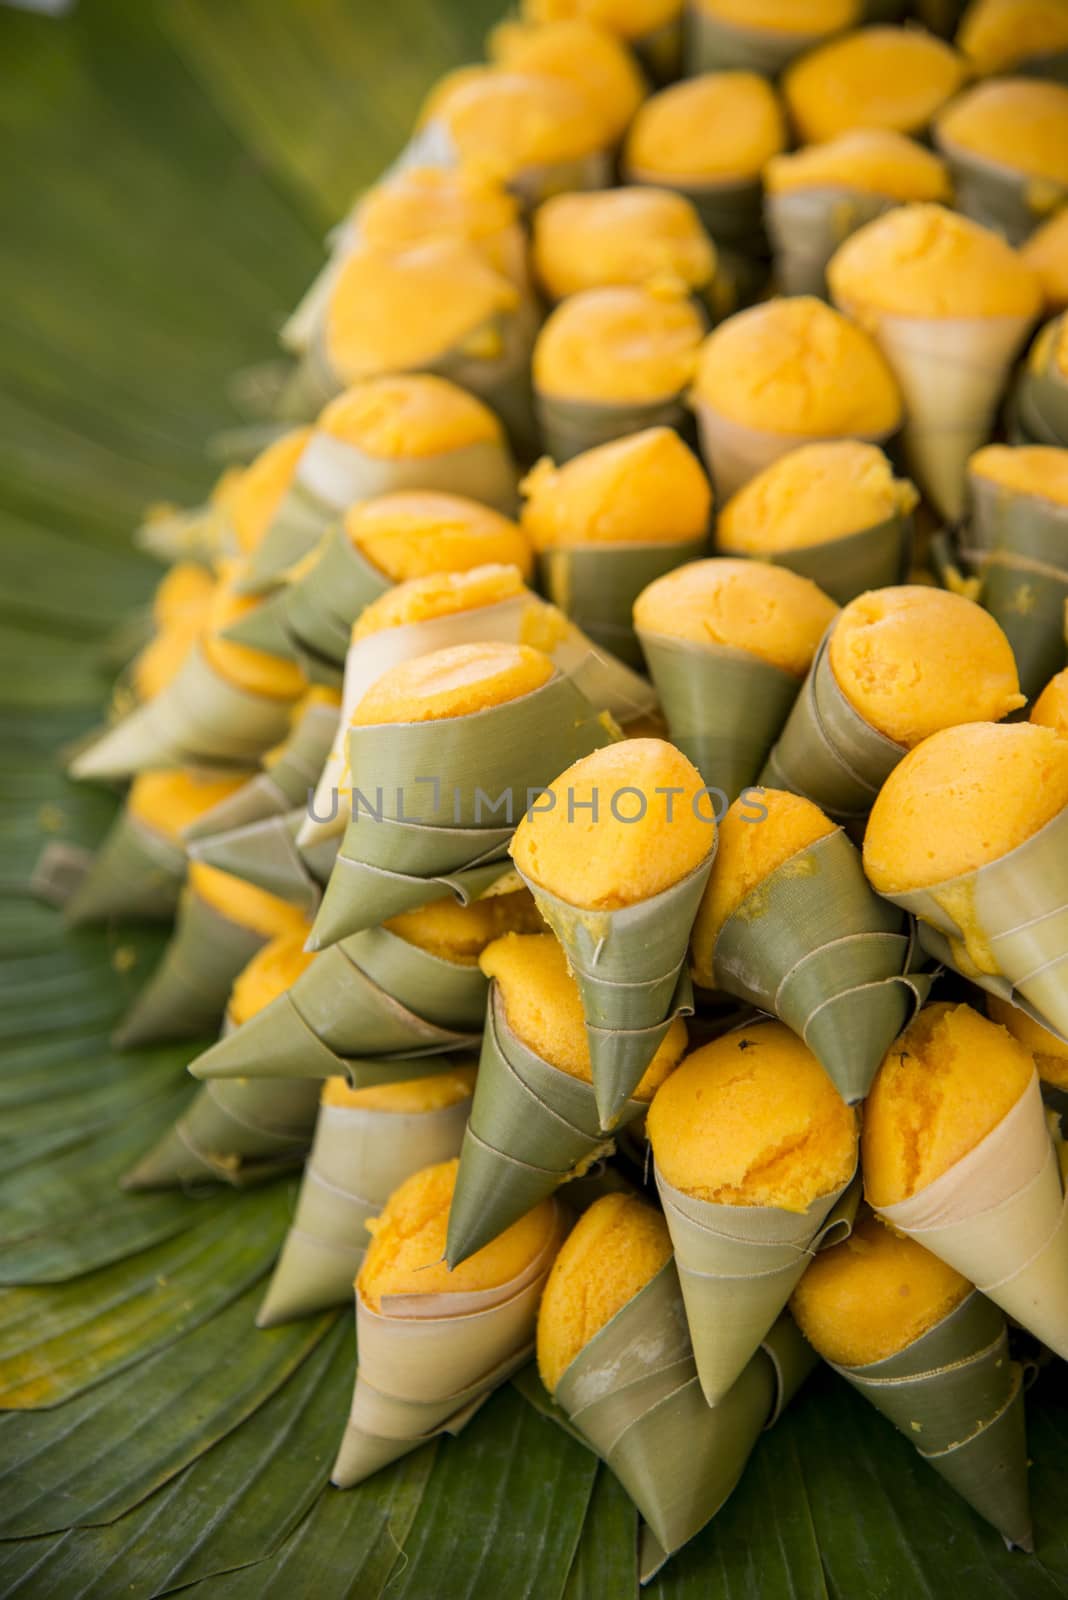 Toddy palm cake in leaf2 by gjeerawut